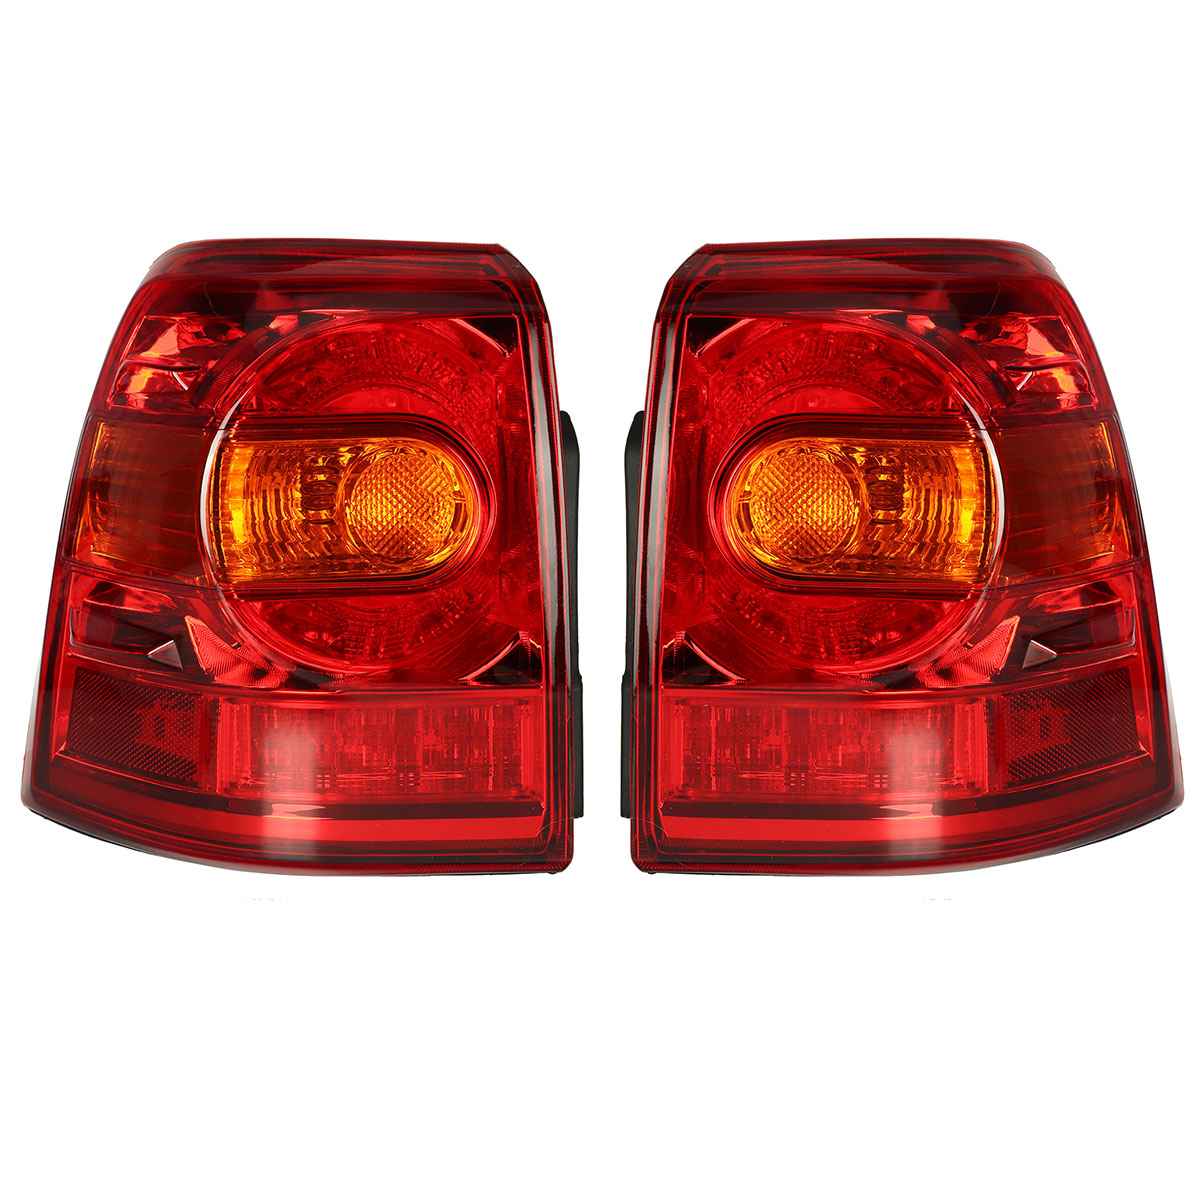 Tail Light Lamp For Toyota Landcruiser 200 2Series 1